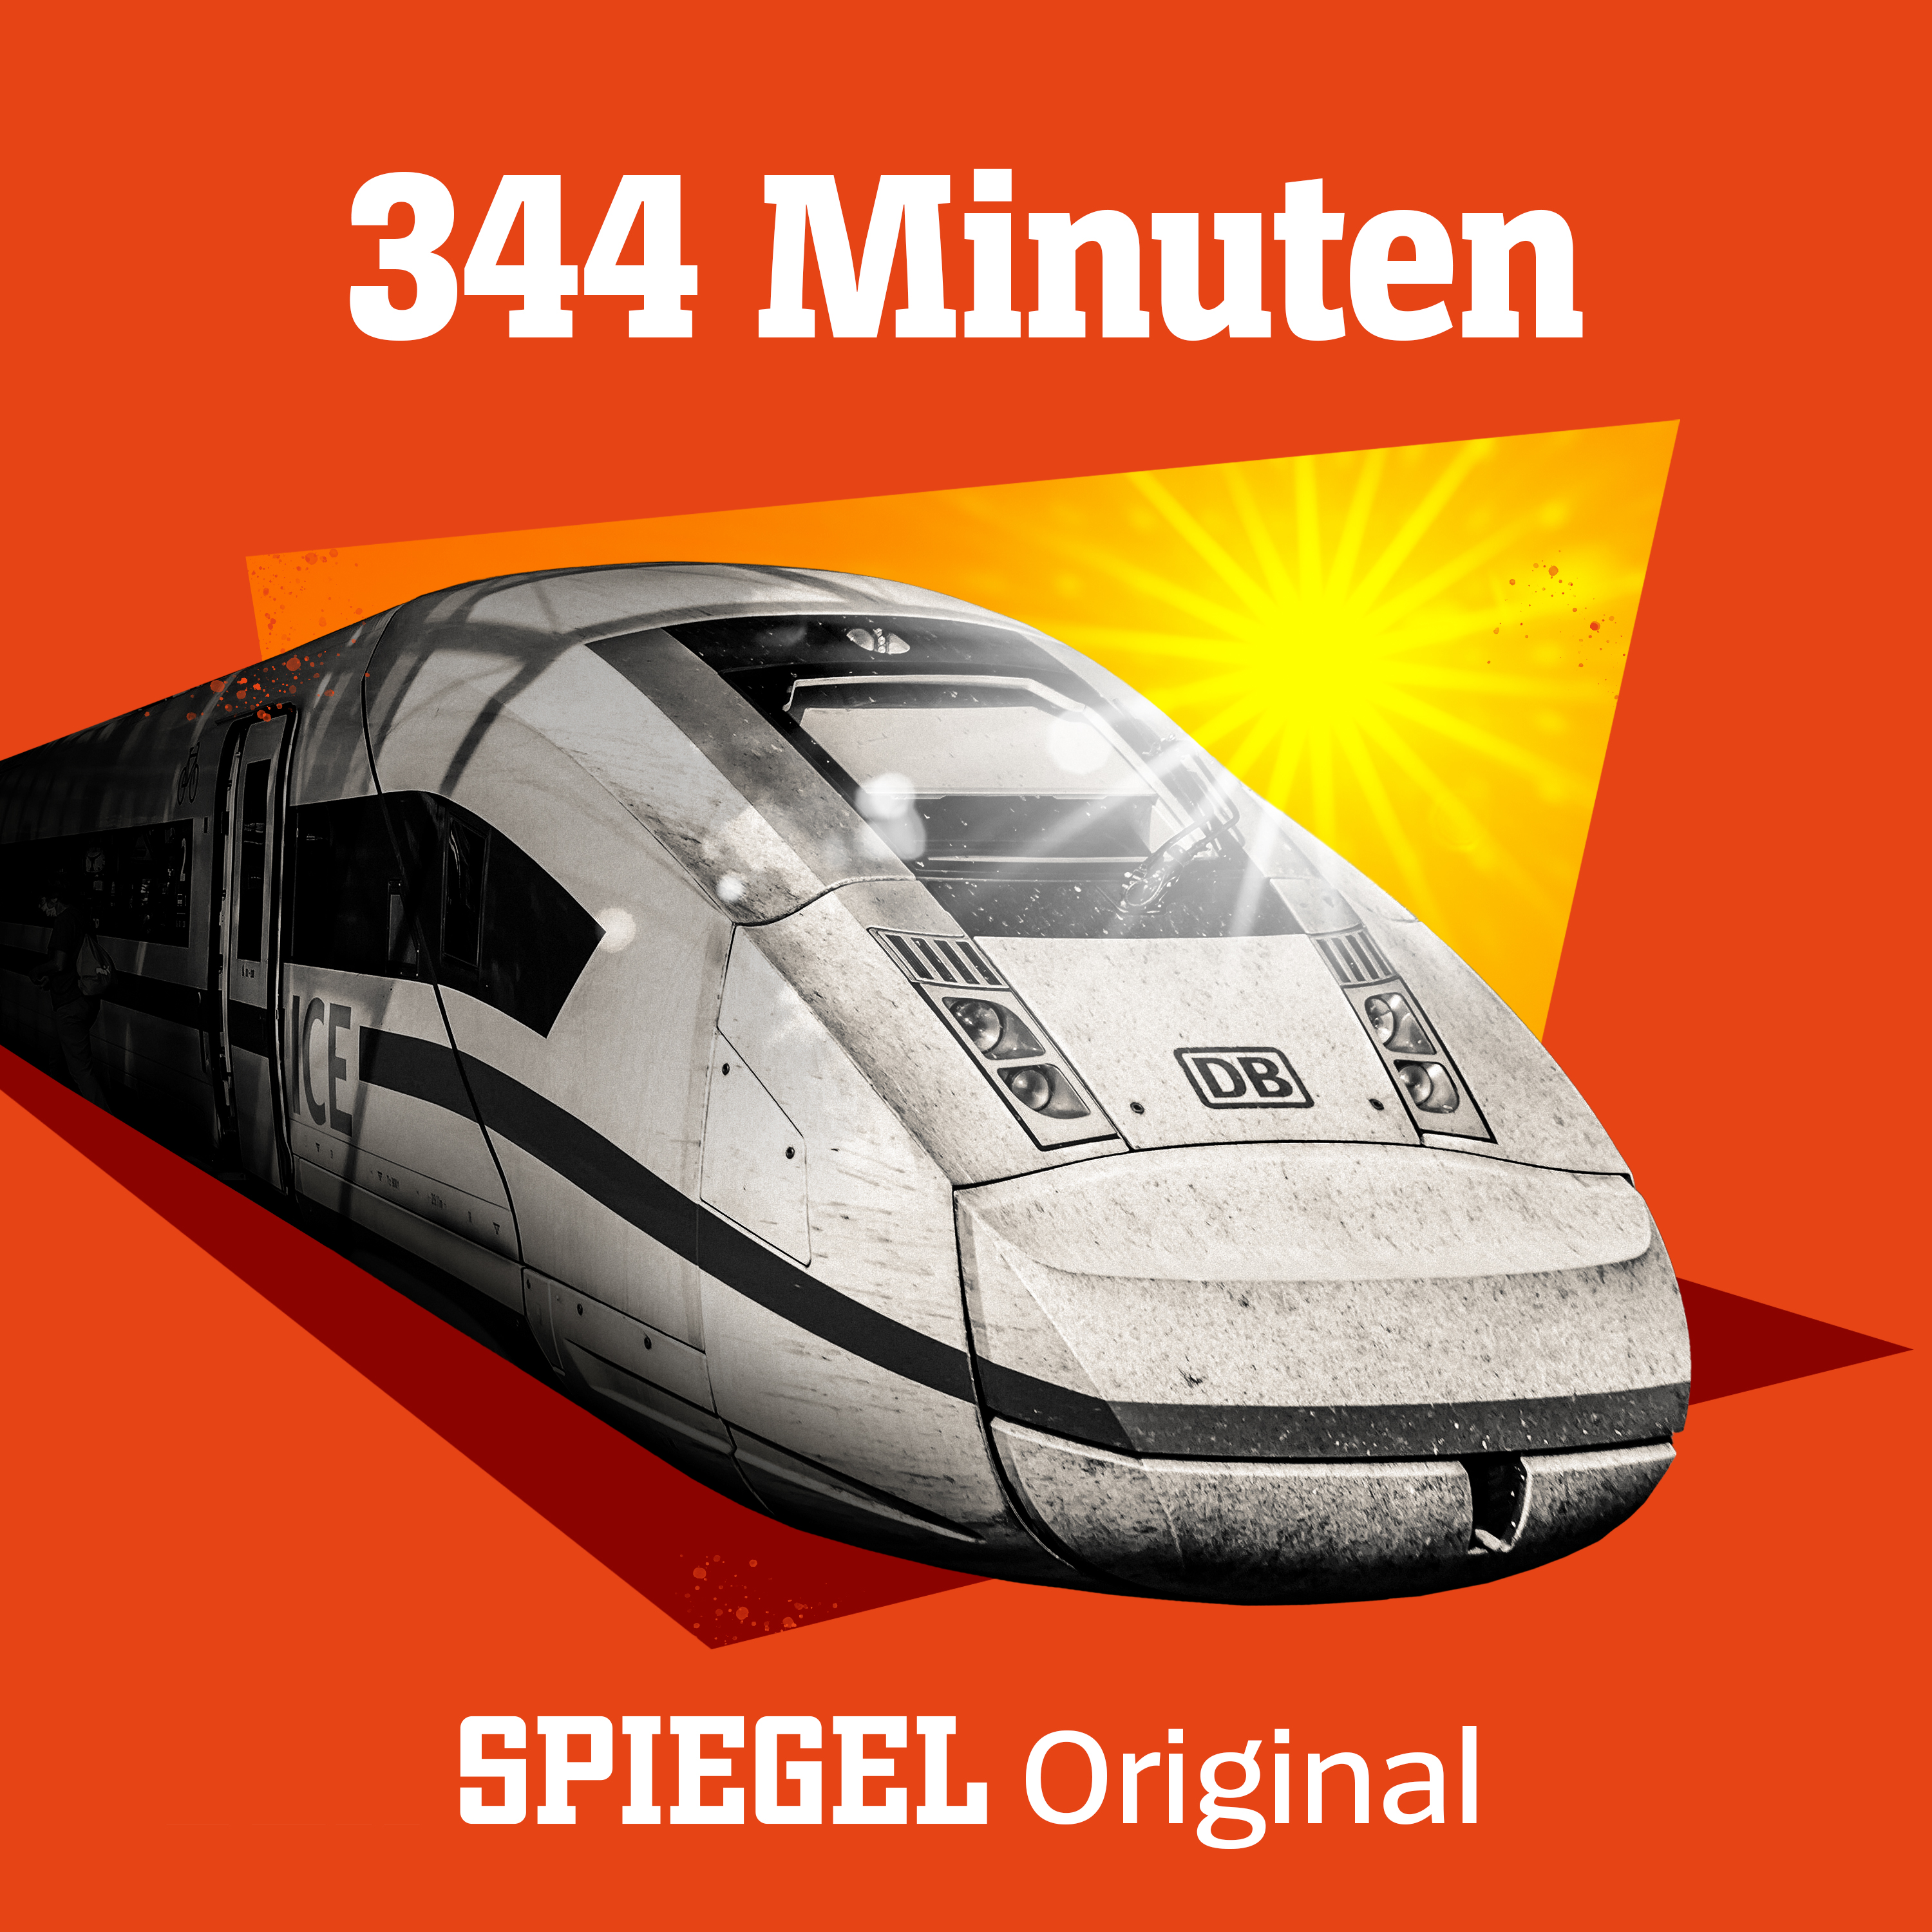 Deutsche Bahn: Podcast 344 Minuten (Folge 1: Hitze) - DER SPIEGEL